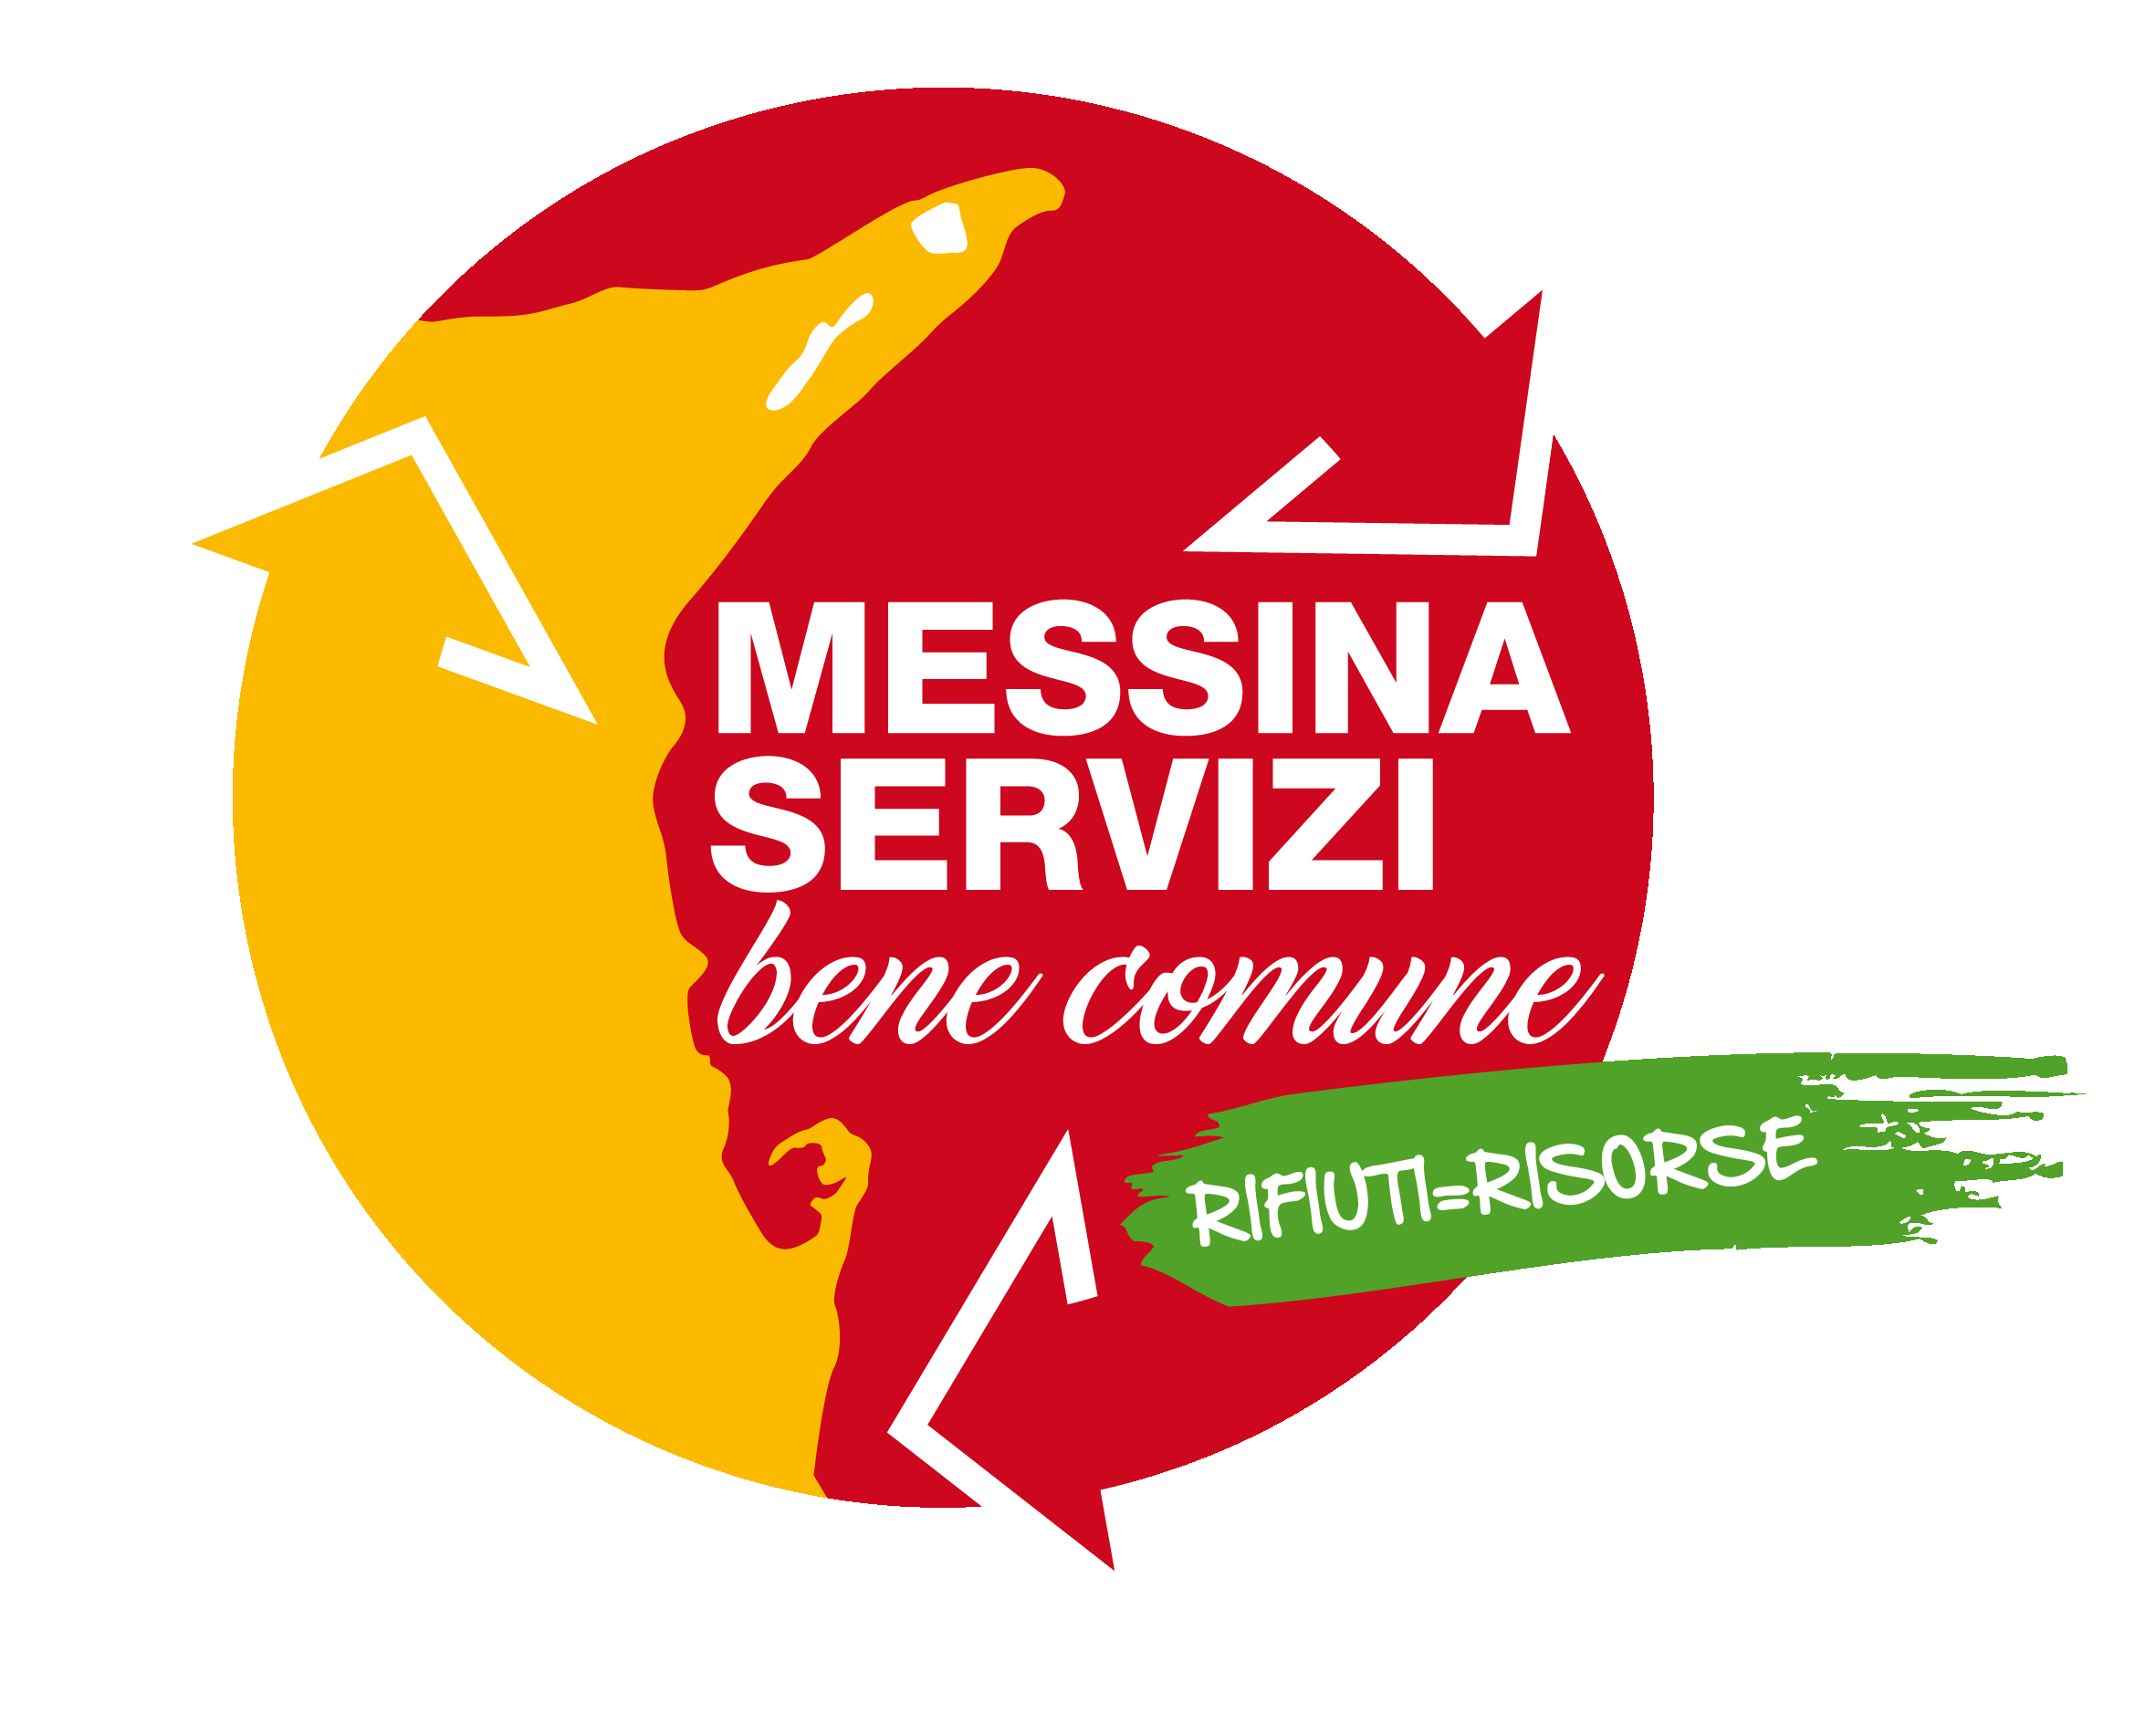 Messina Servizi Bene Comune